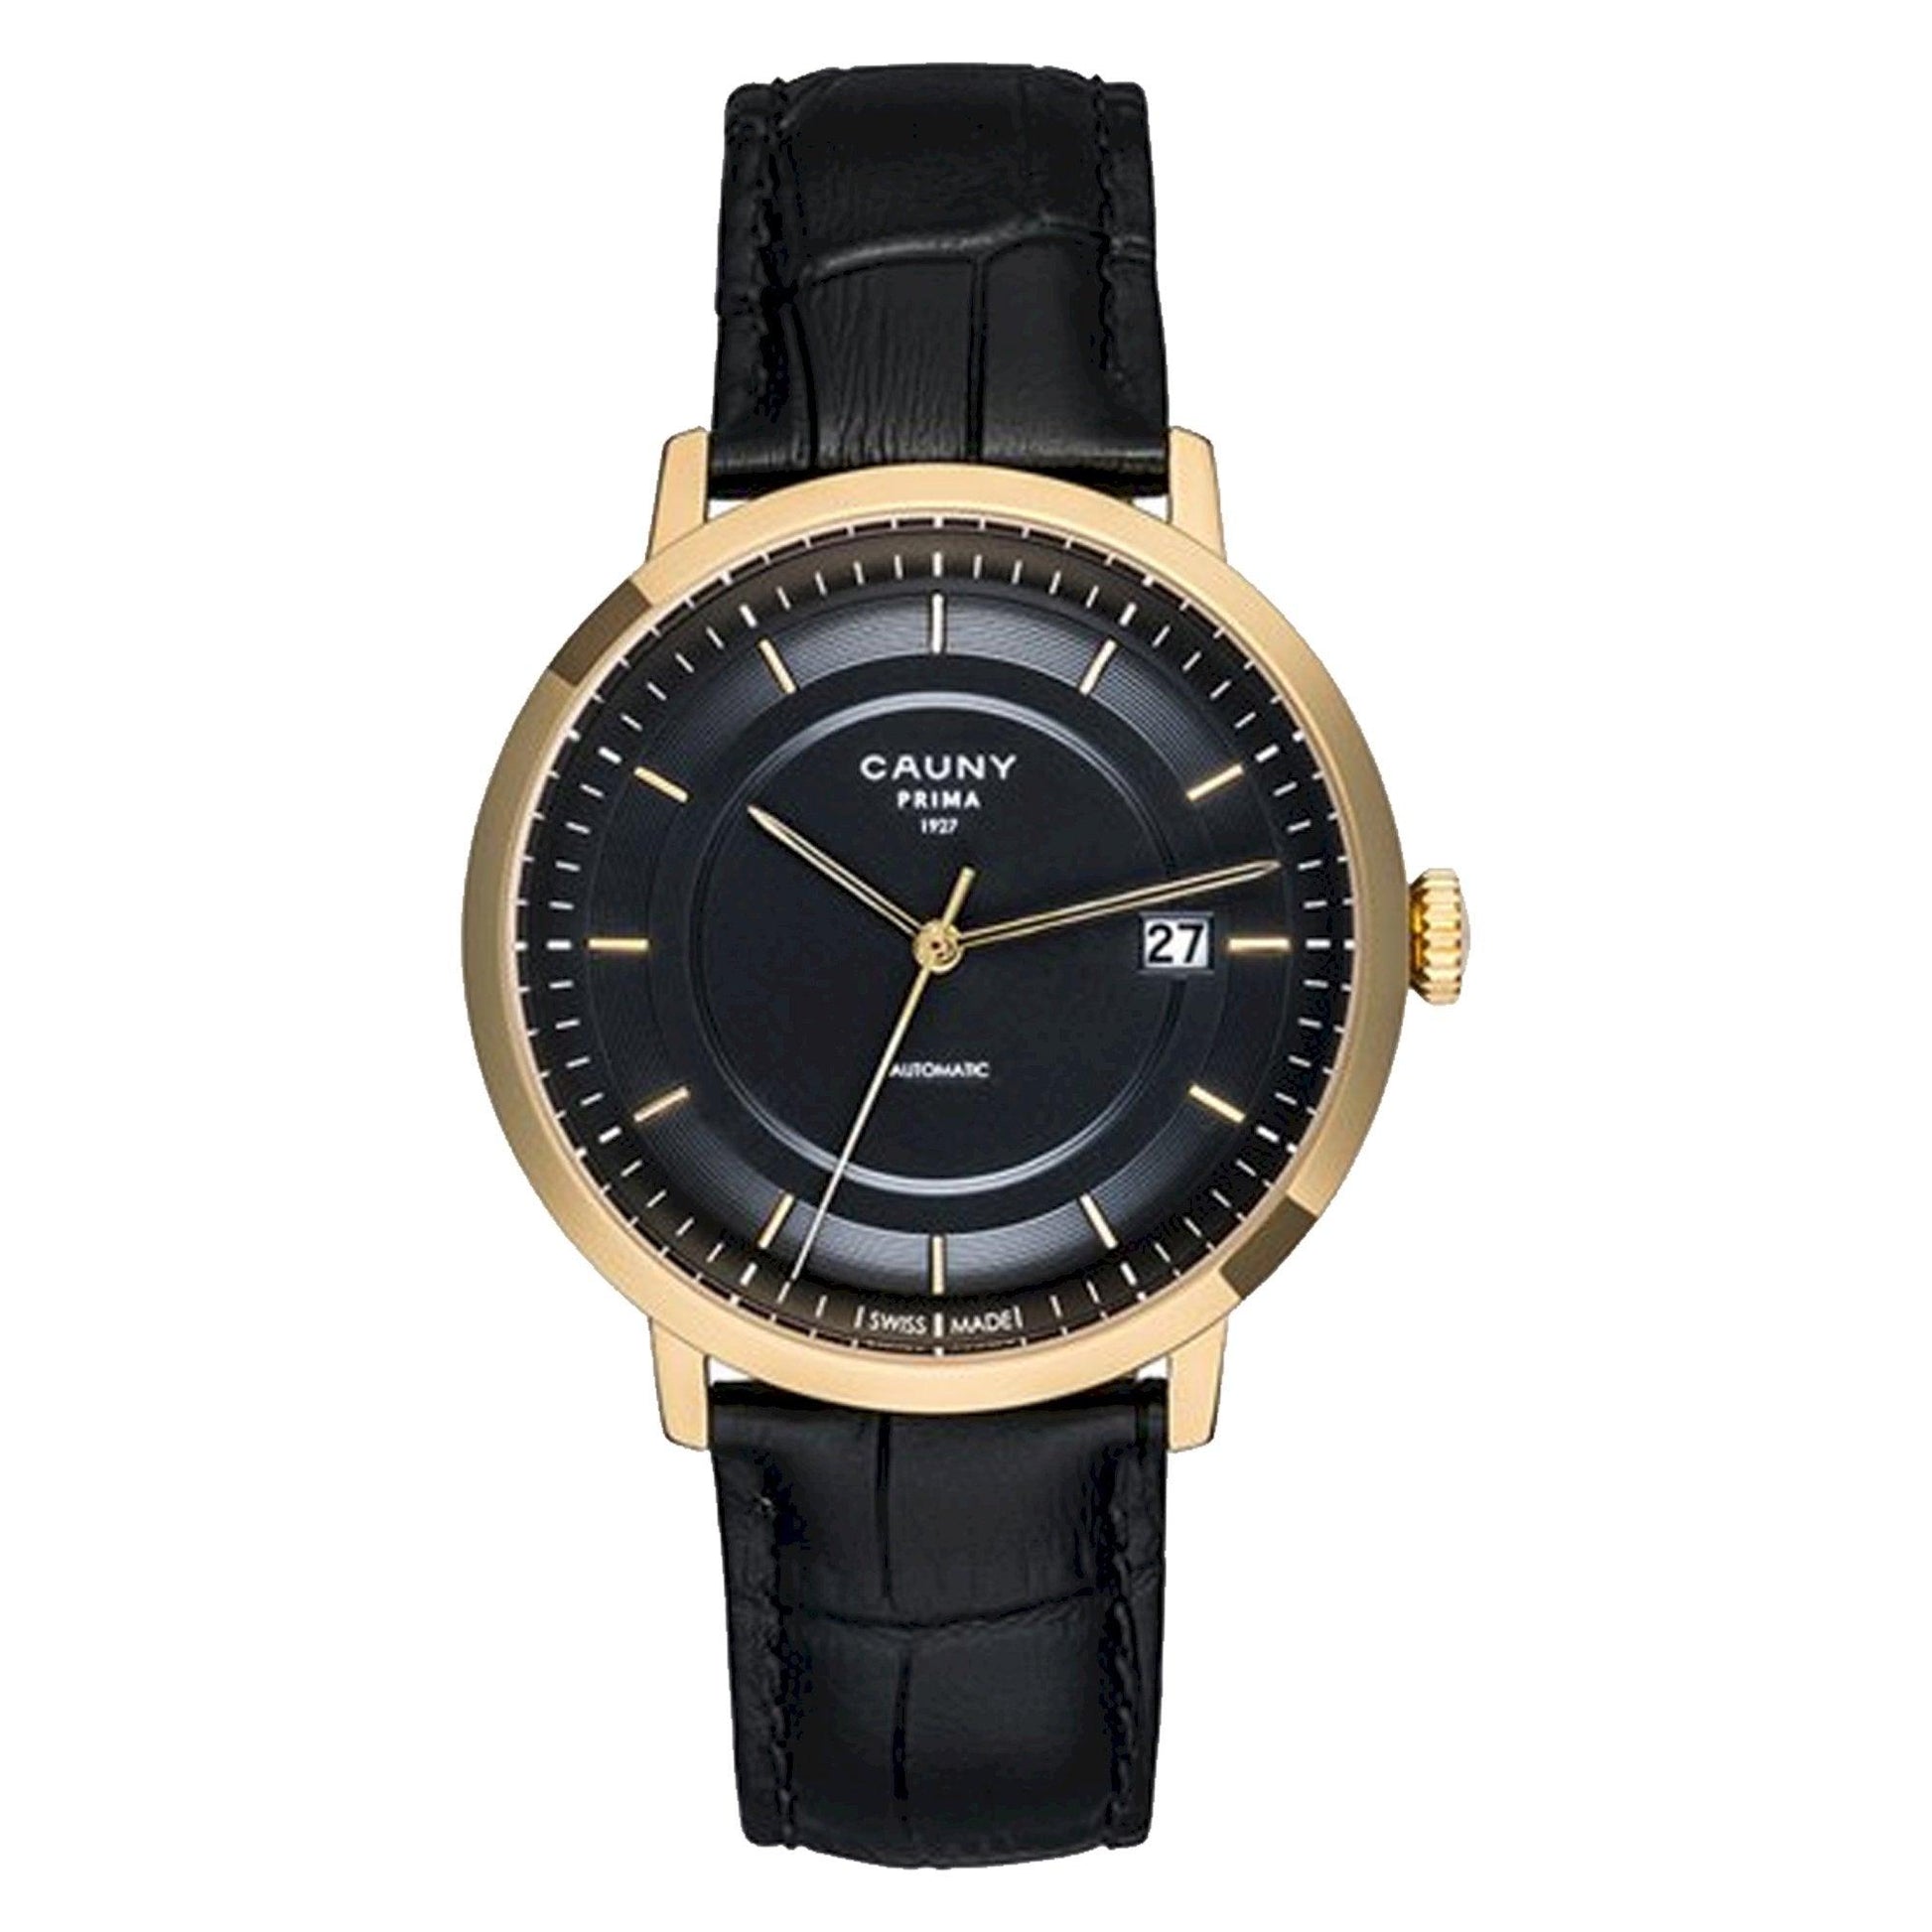 Cauny Prima CPM004 orologio uomo meccanico - Kechiq Concept Boutique